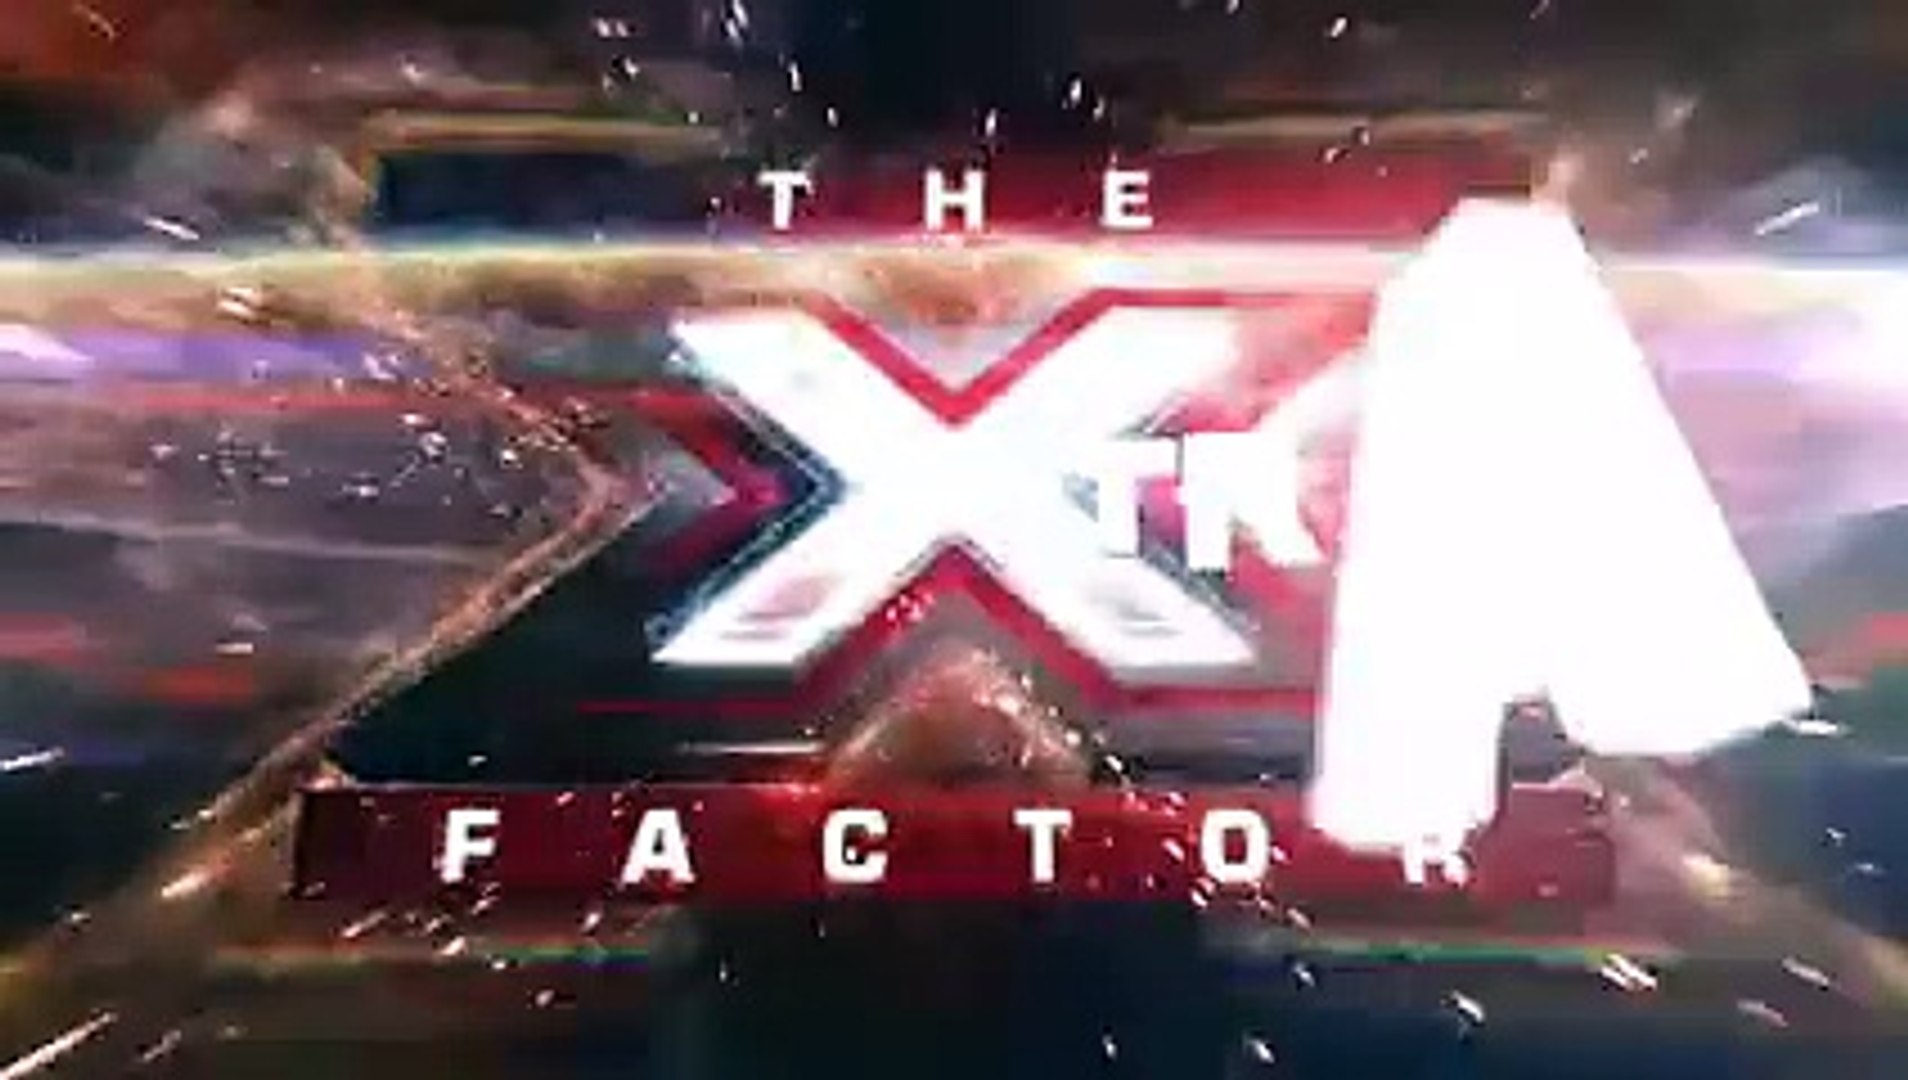 He's baaaack! Watch Rylan's return to the studios! - The Xtra Factor - The X Factor UK 201